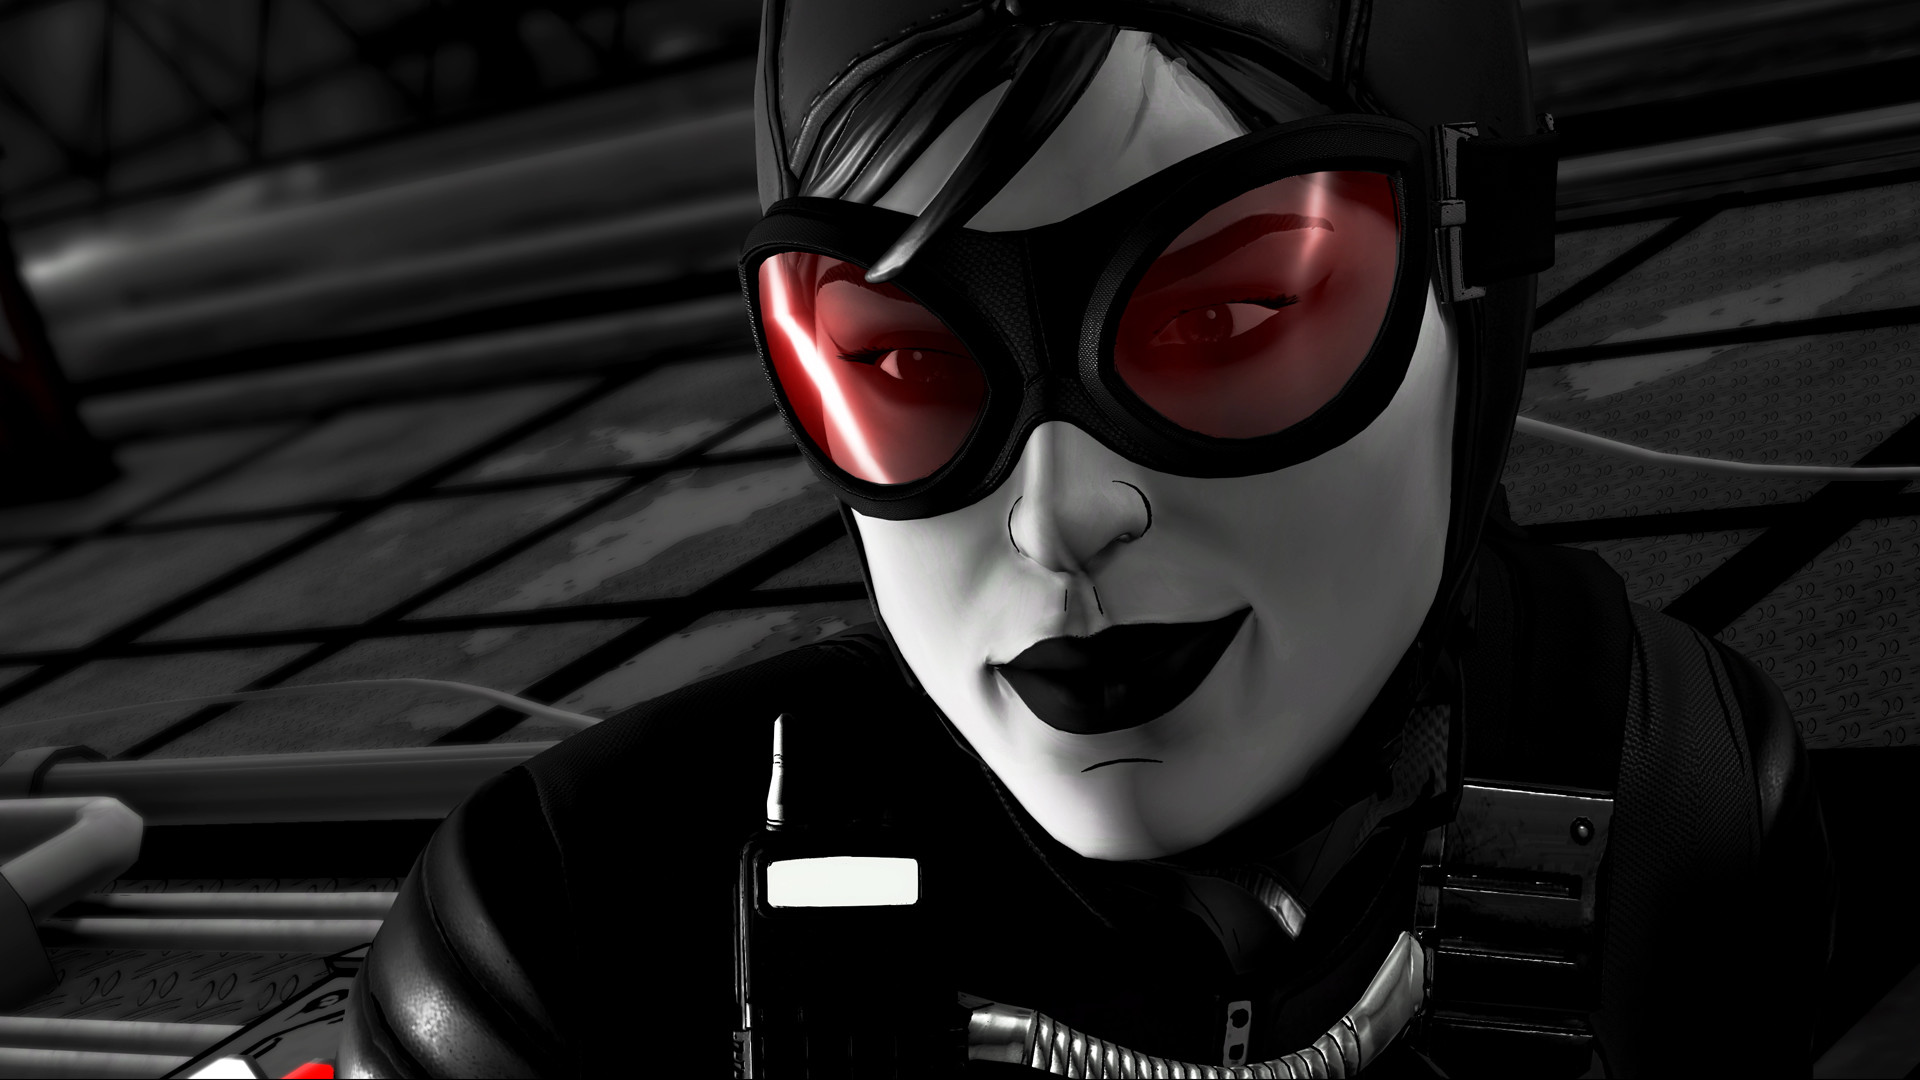 Batman - The Telltale Series Shadows Mode Featured Screenshot #1